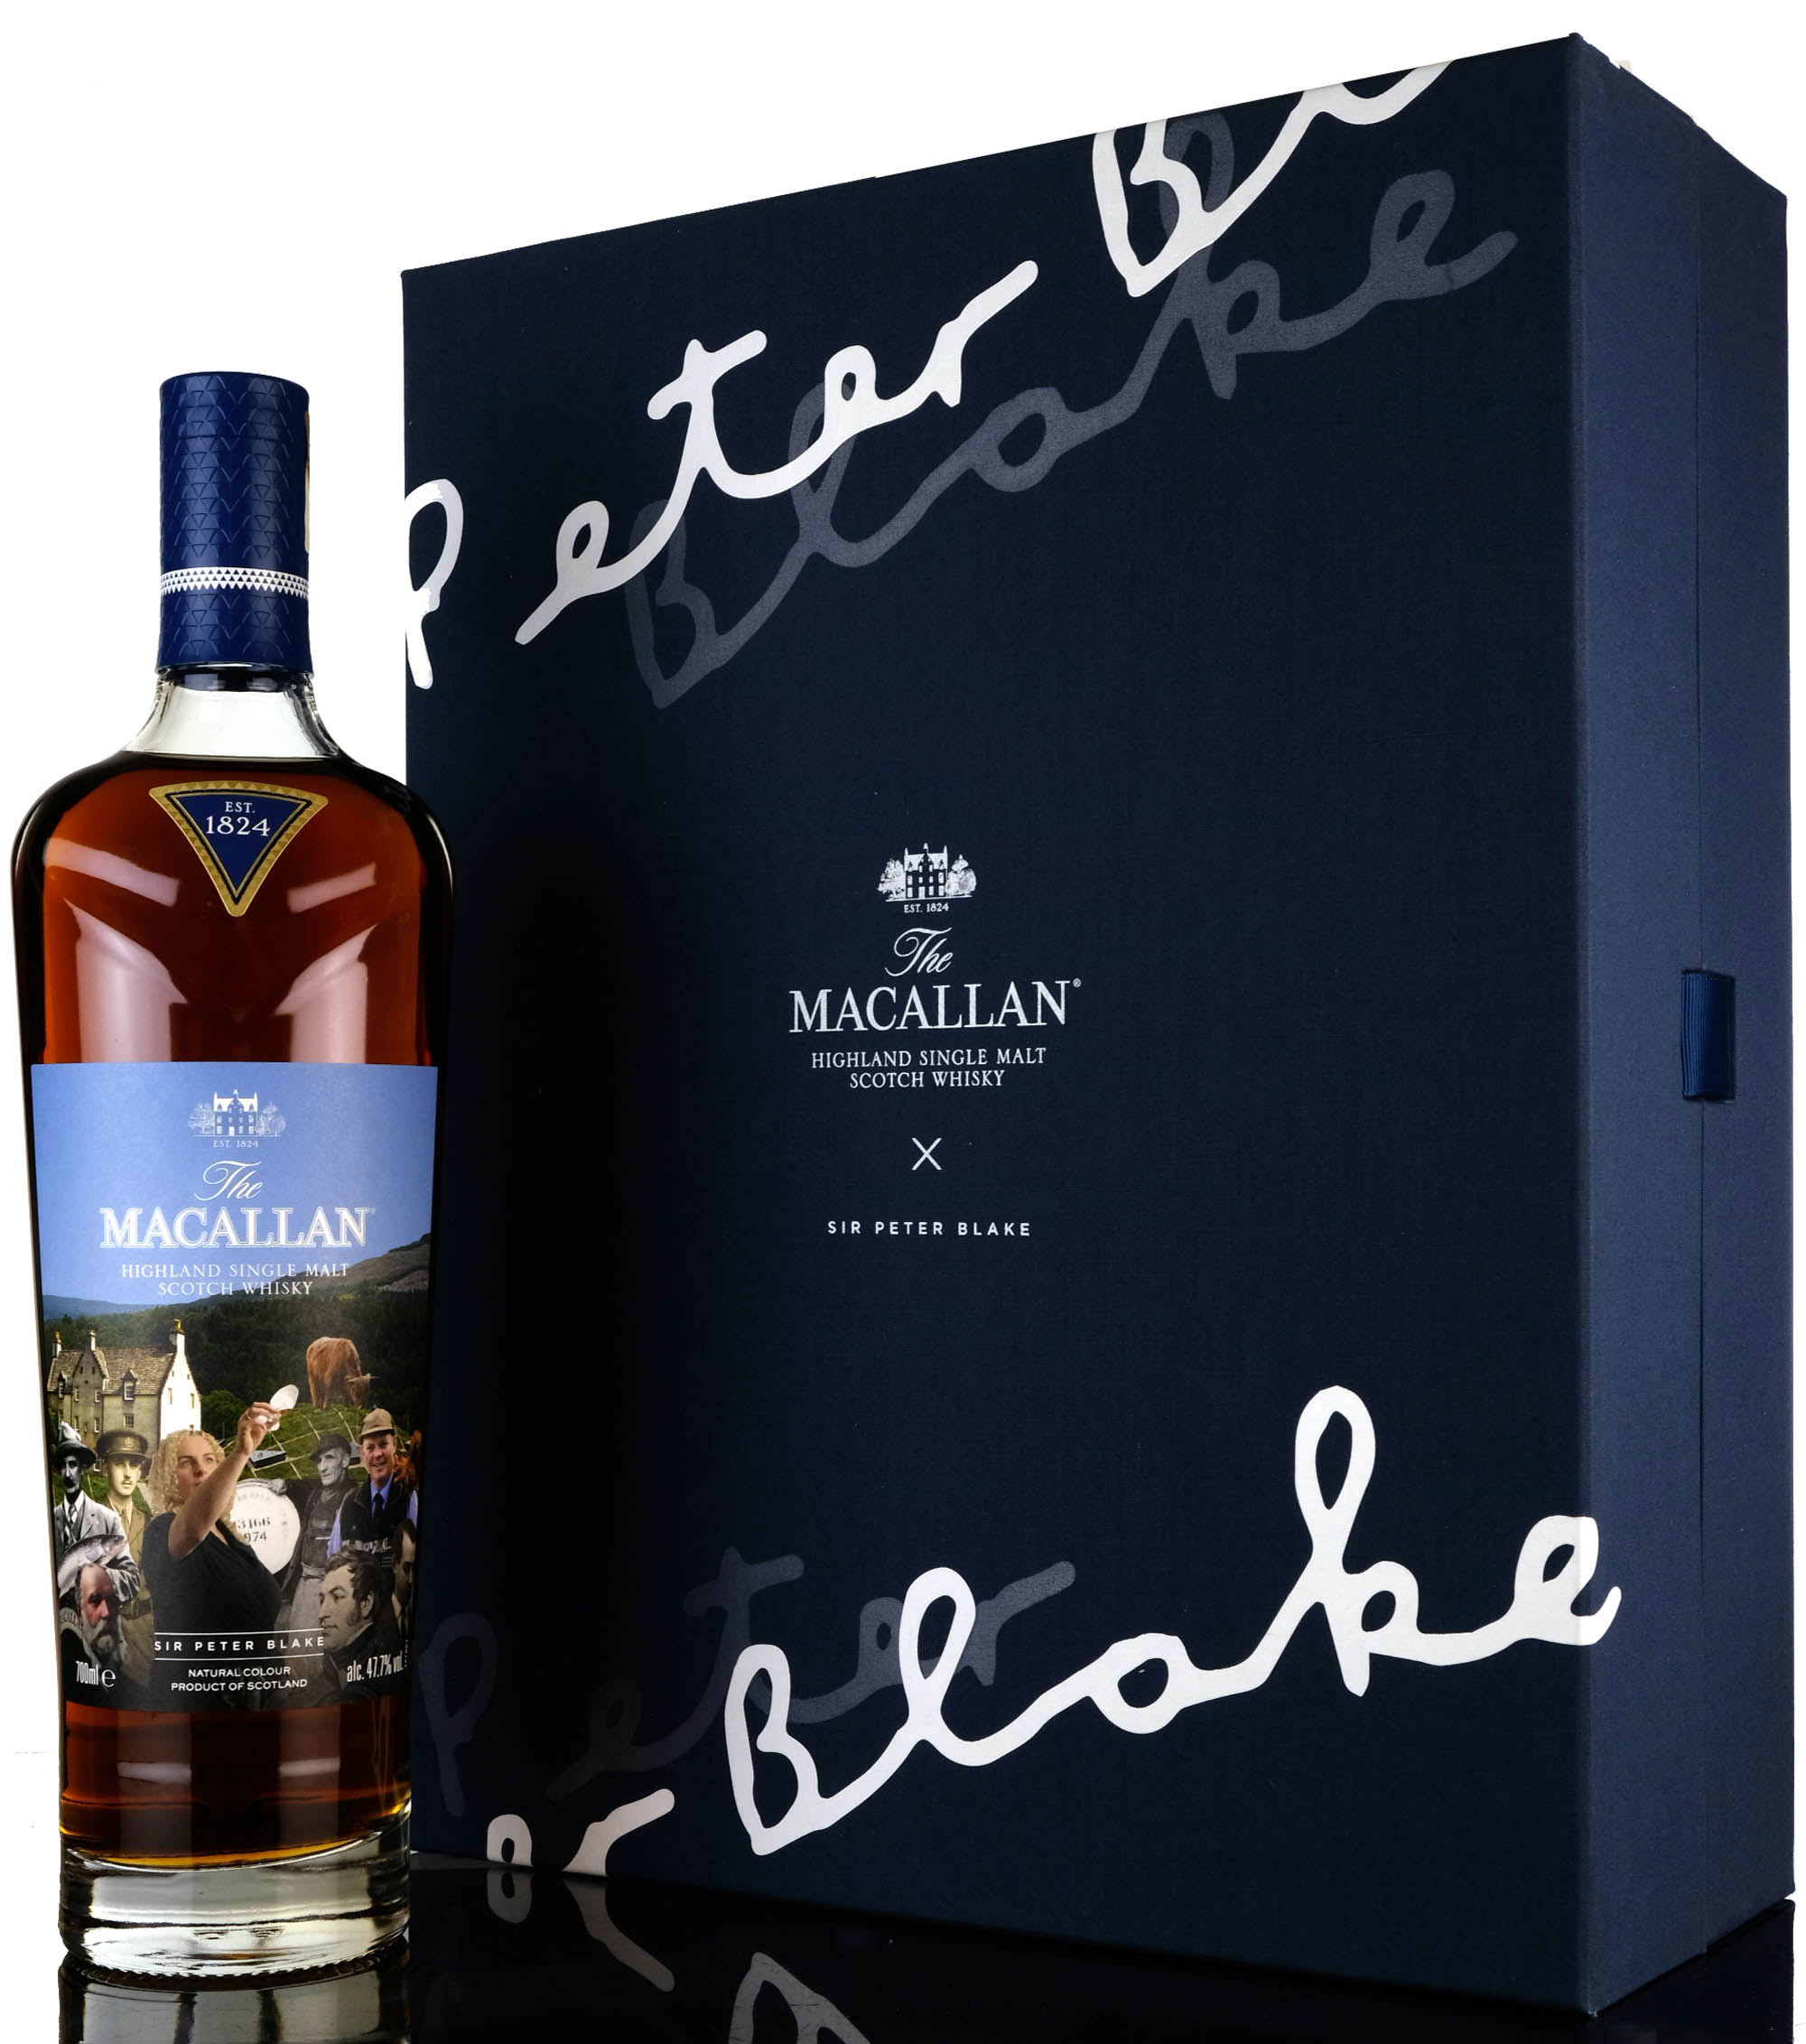 Macallan X Sir Peter Blake - An Estate, A Community And A Distillery